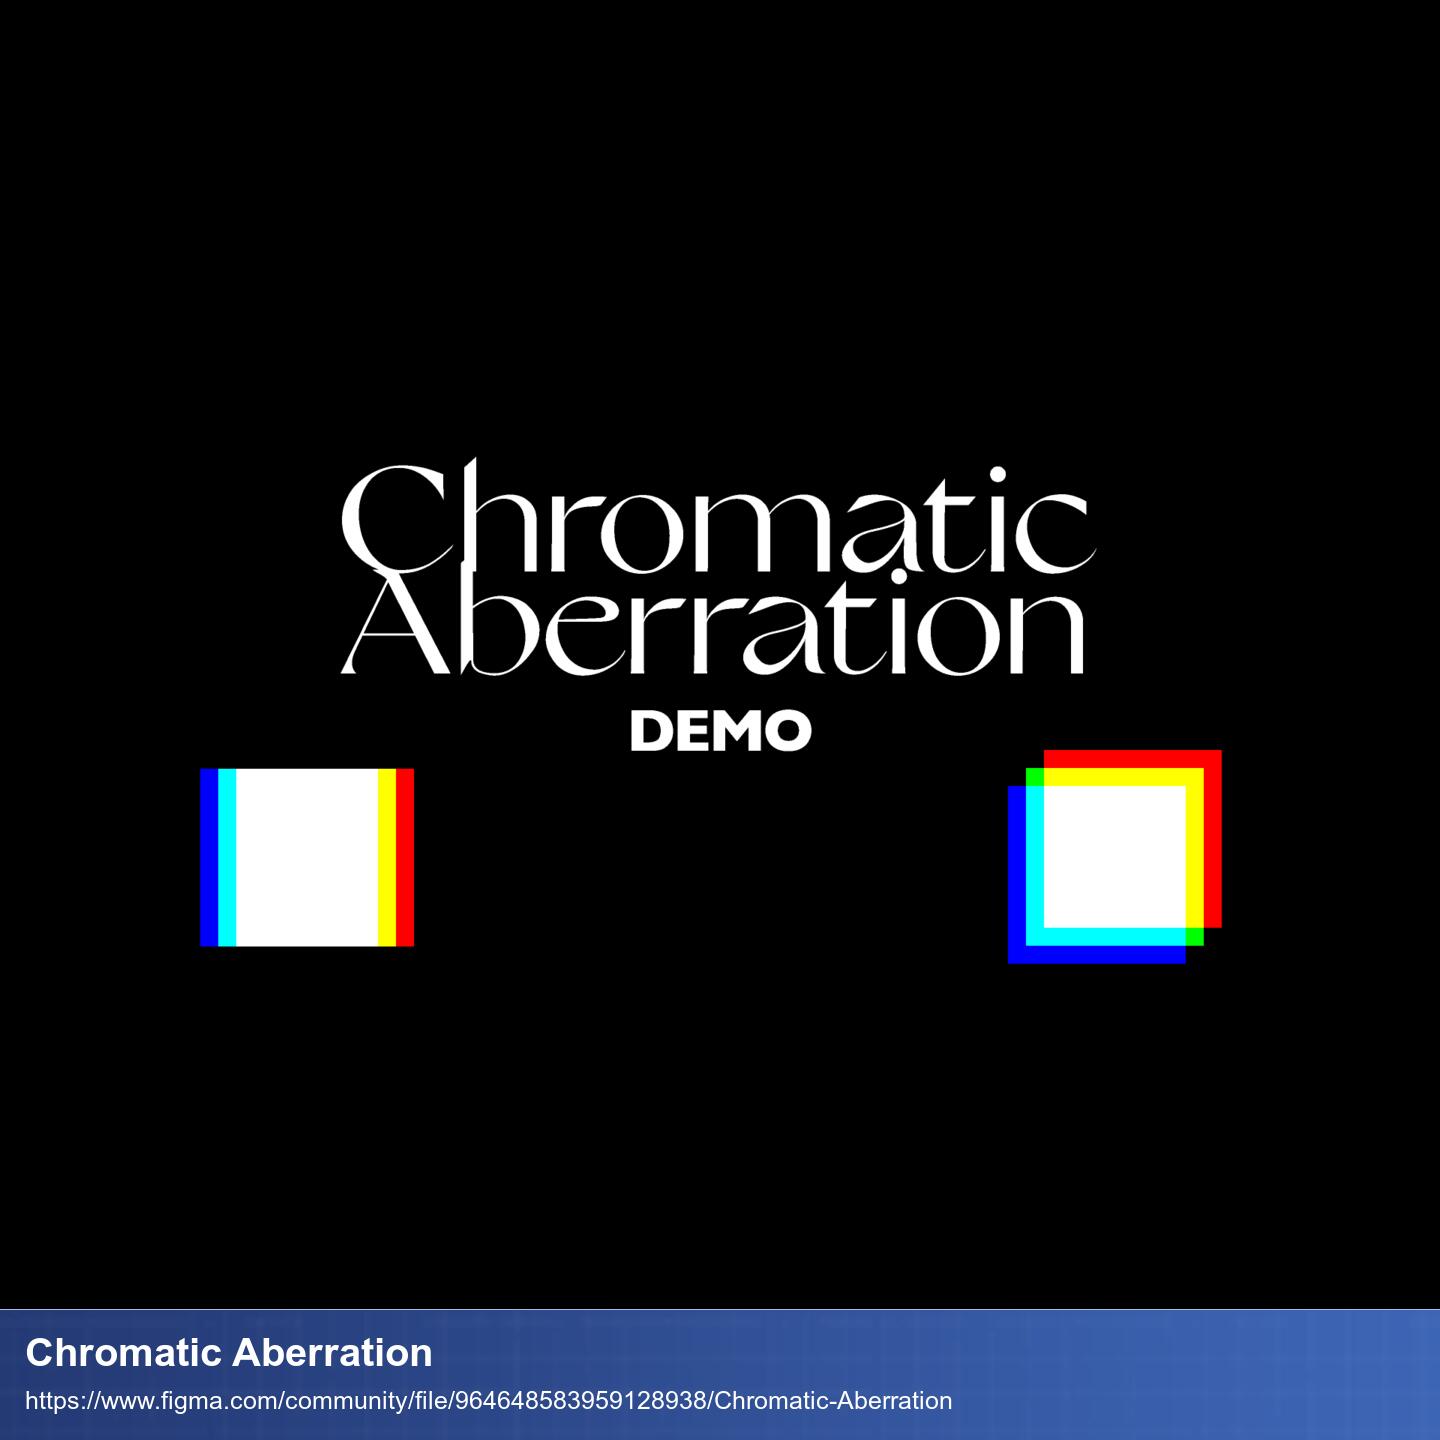 Beispiel für Chromatic Aberration. Weisses Quadrat von dem die RGB Kanäle verschoben sind, sodass am Rand ein Farbspektrum zu sehen ist.